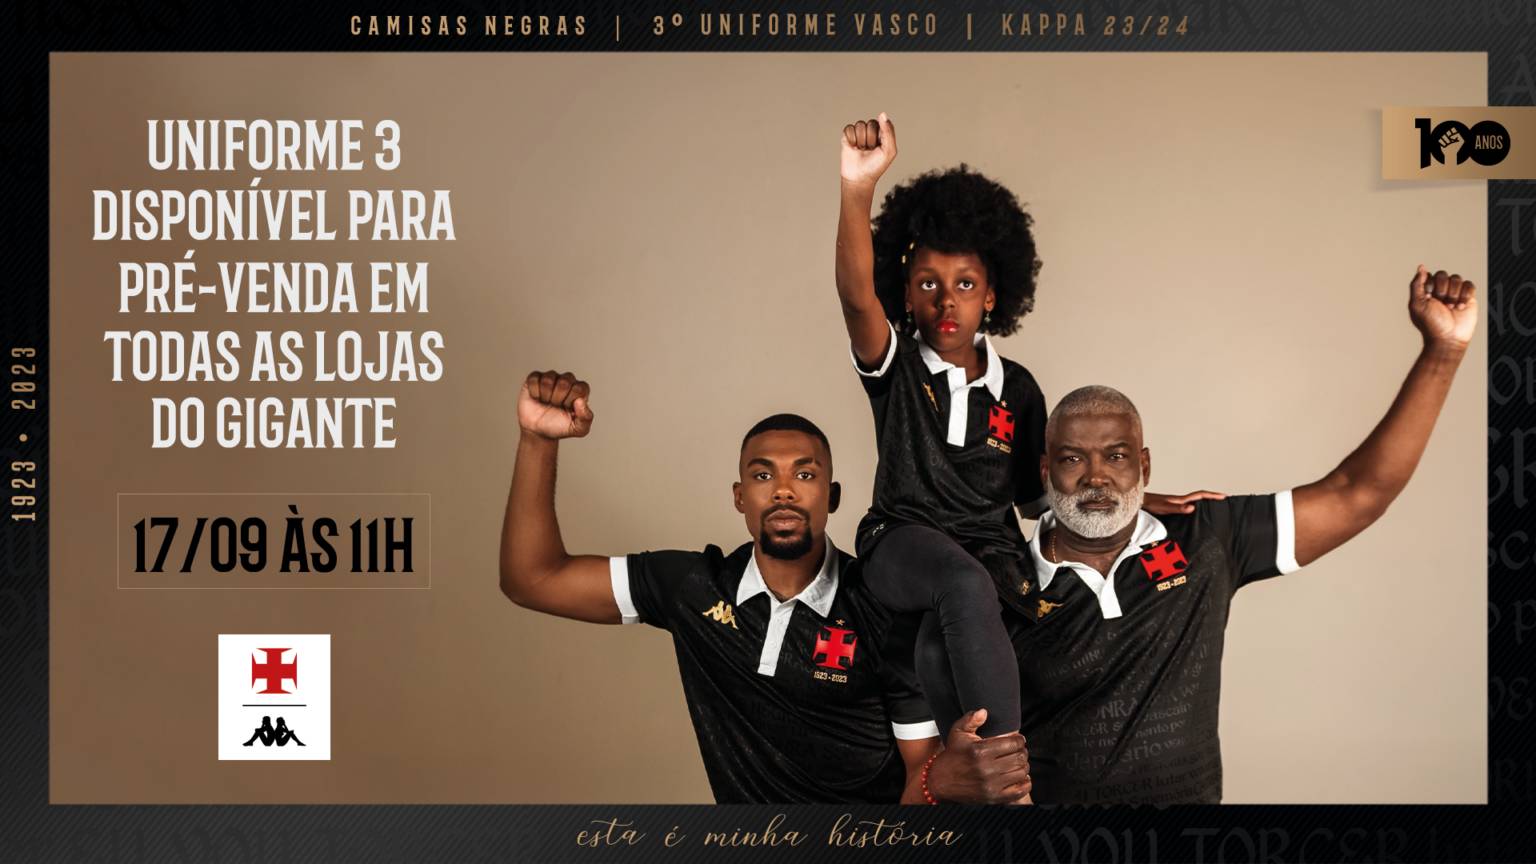 Vasco homenageia os Camisas Negras em 3º uniforme